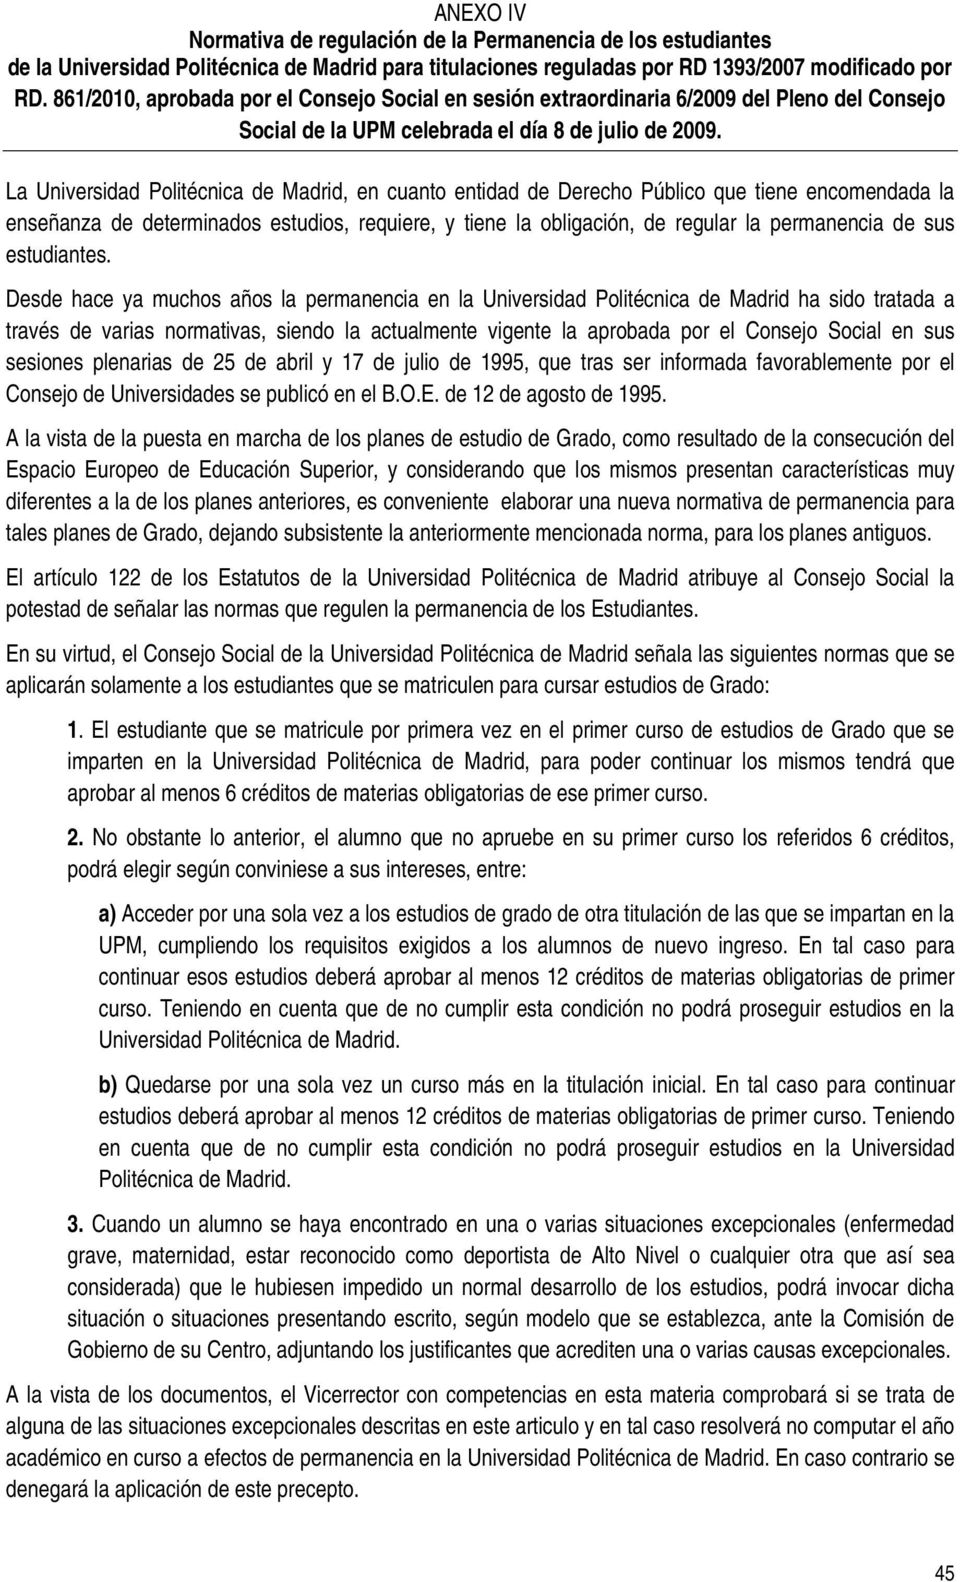 La Universidad Politécnica de Madrid, en cuanto entidad de Derecho Público que tiene encomendada la enseñanza de determinados estudios, requiere, y tiene la obligación, de regular la permanencia de